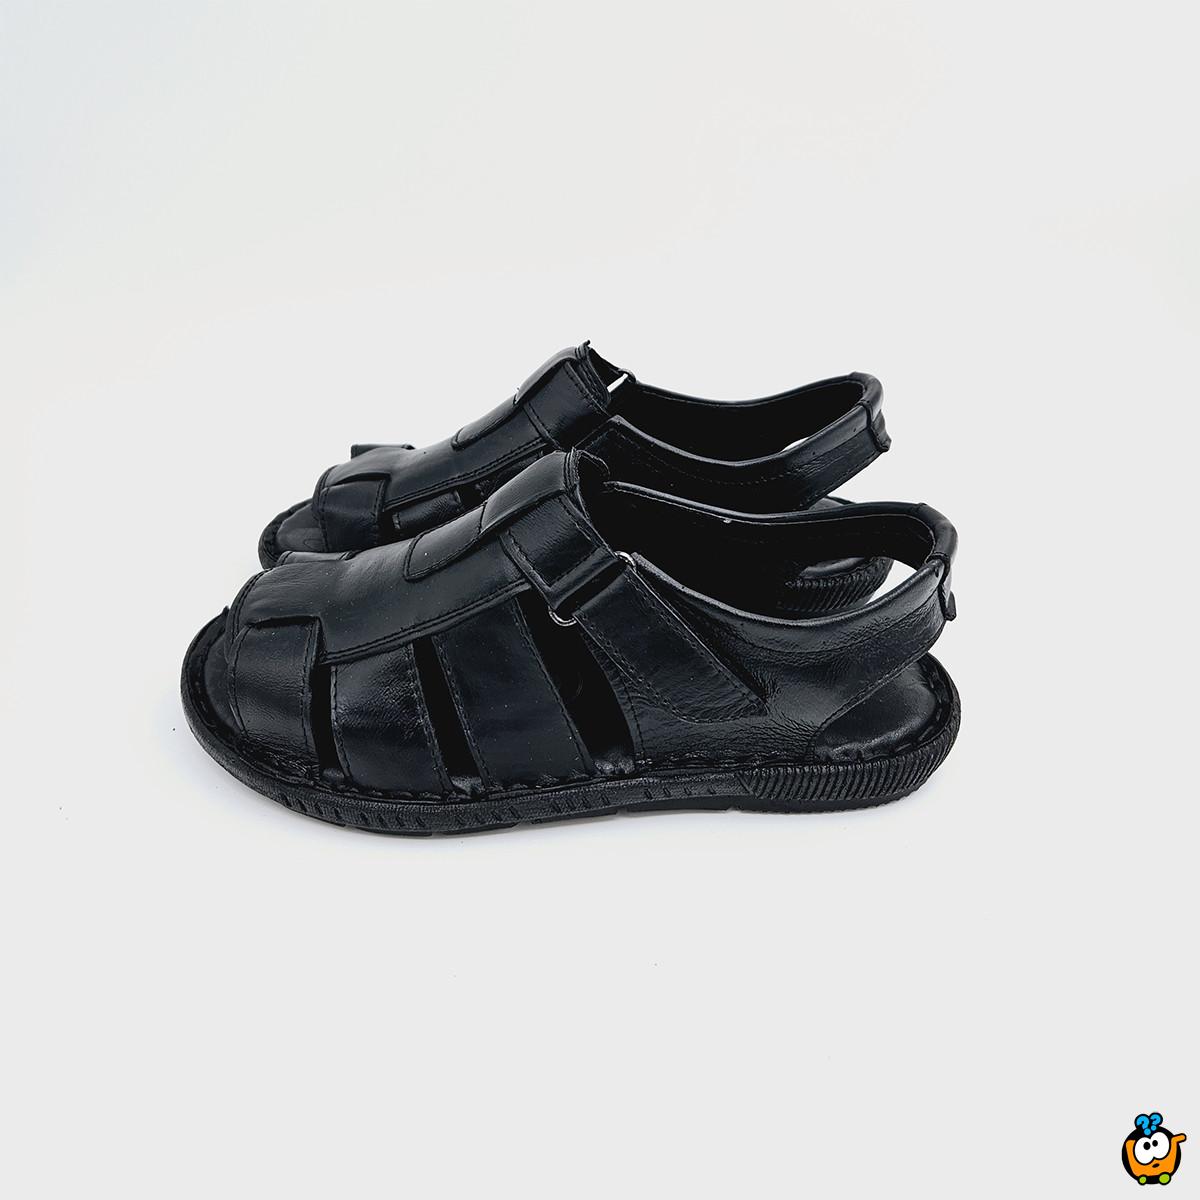 Muške kožne sandale u crnoj boji 022 BLK